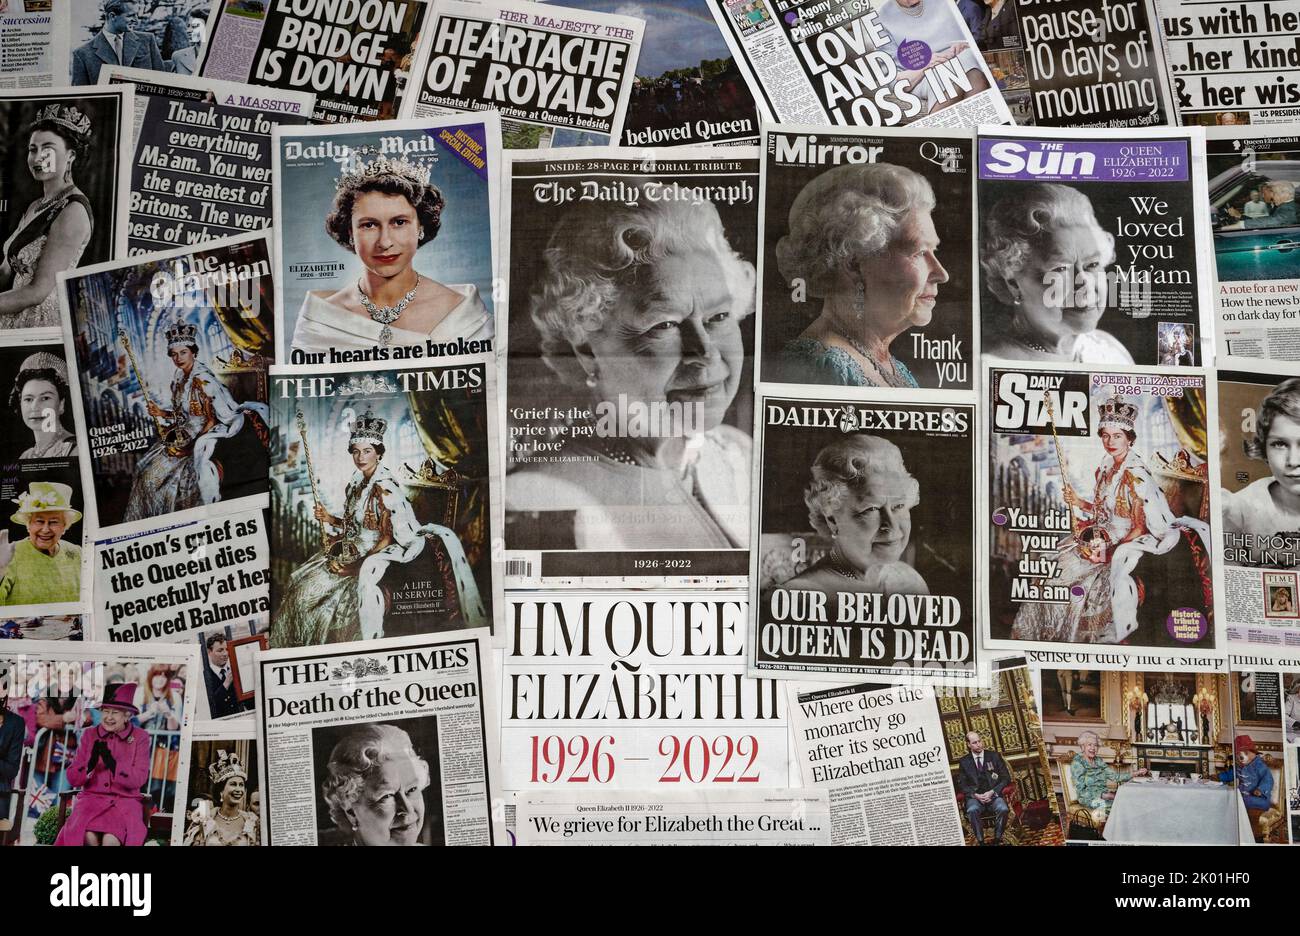 Londres, Angleterre - 09 septembre 2022: Journaux en première page sur le décès de la reine Elizabeth II, qui est décédée à l'âge de 96 ans sur 8 septembre 20 Banque D'Images